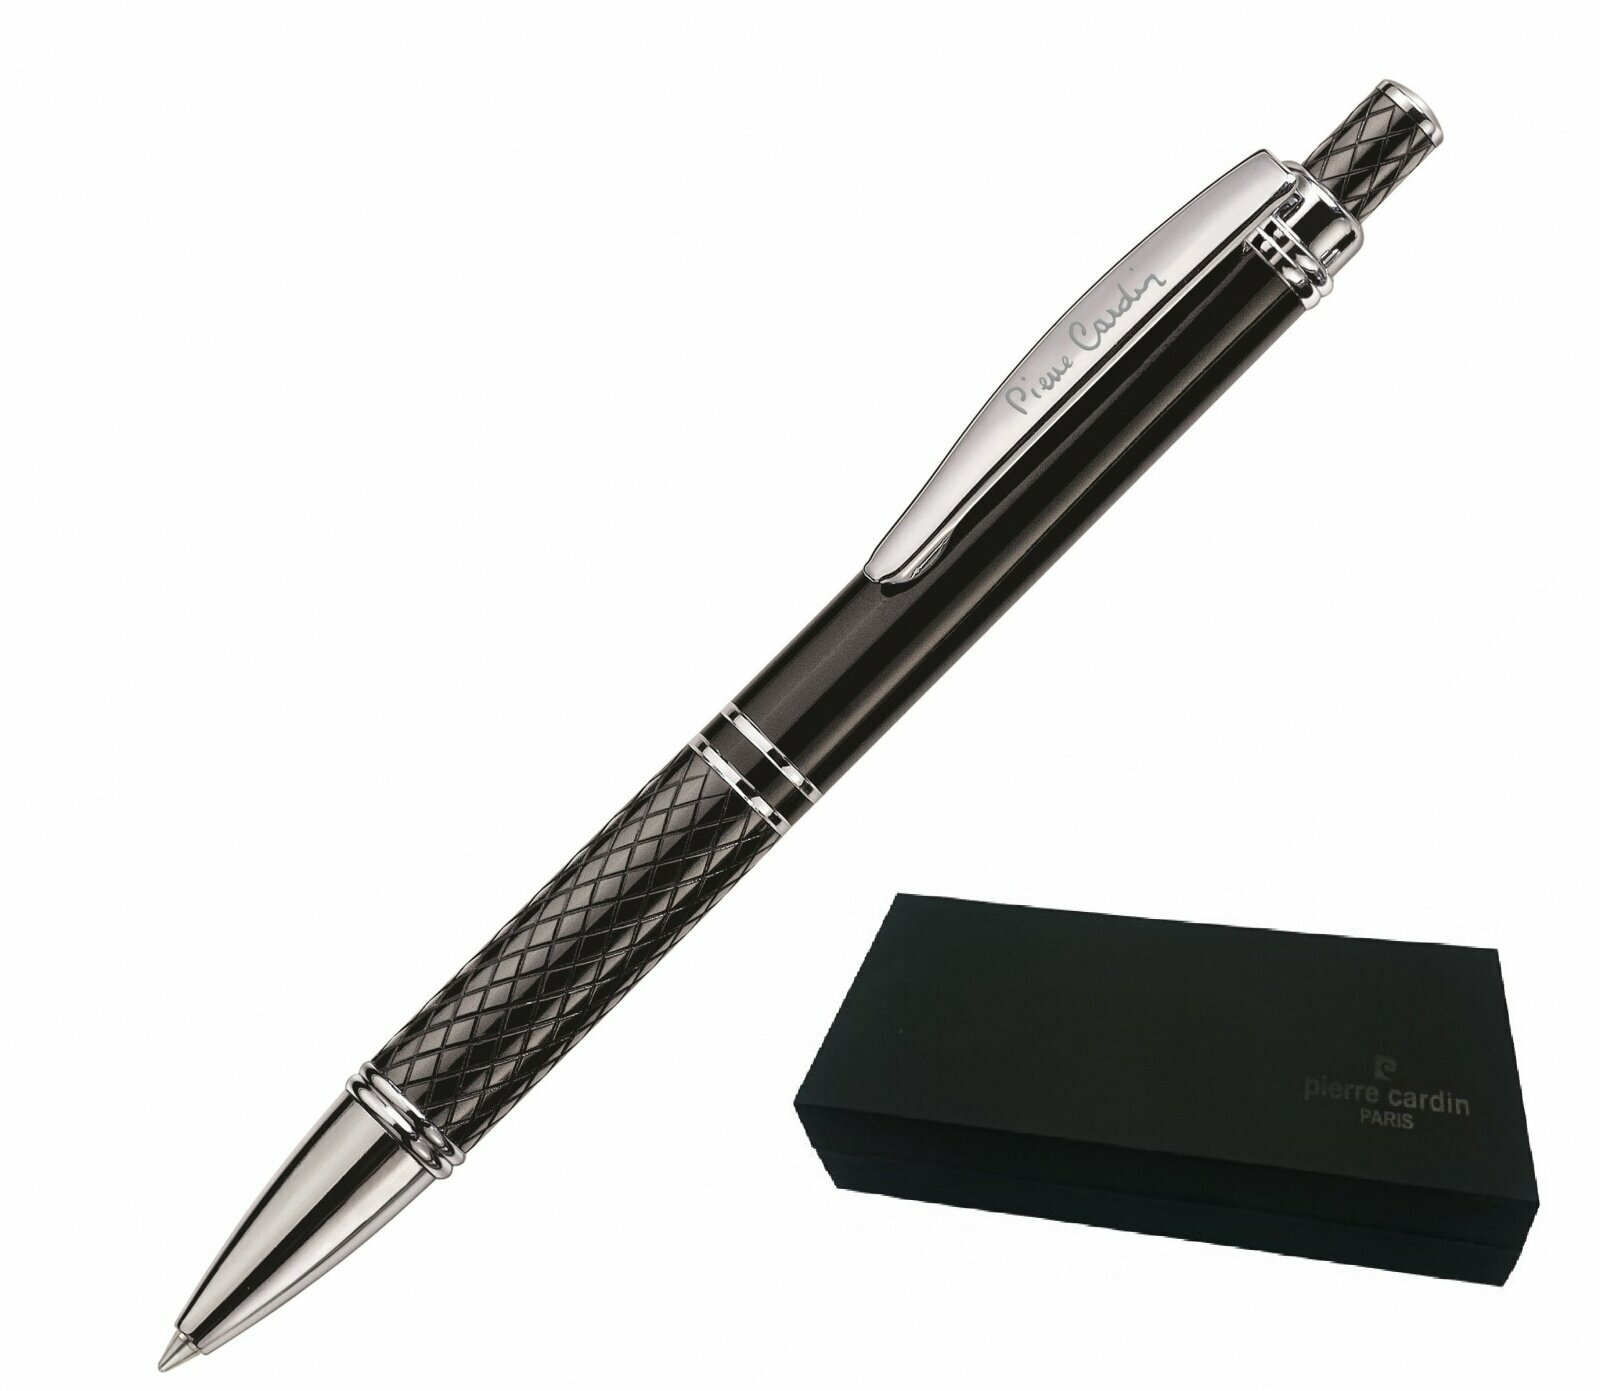 Ручка шариковая Pierre Cardin GAMME. Цвет - черный. Упаковка Е или Е-1, PC0895BP